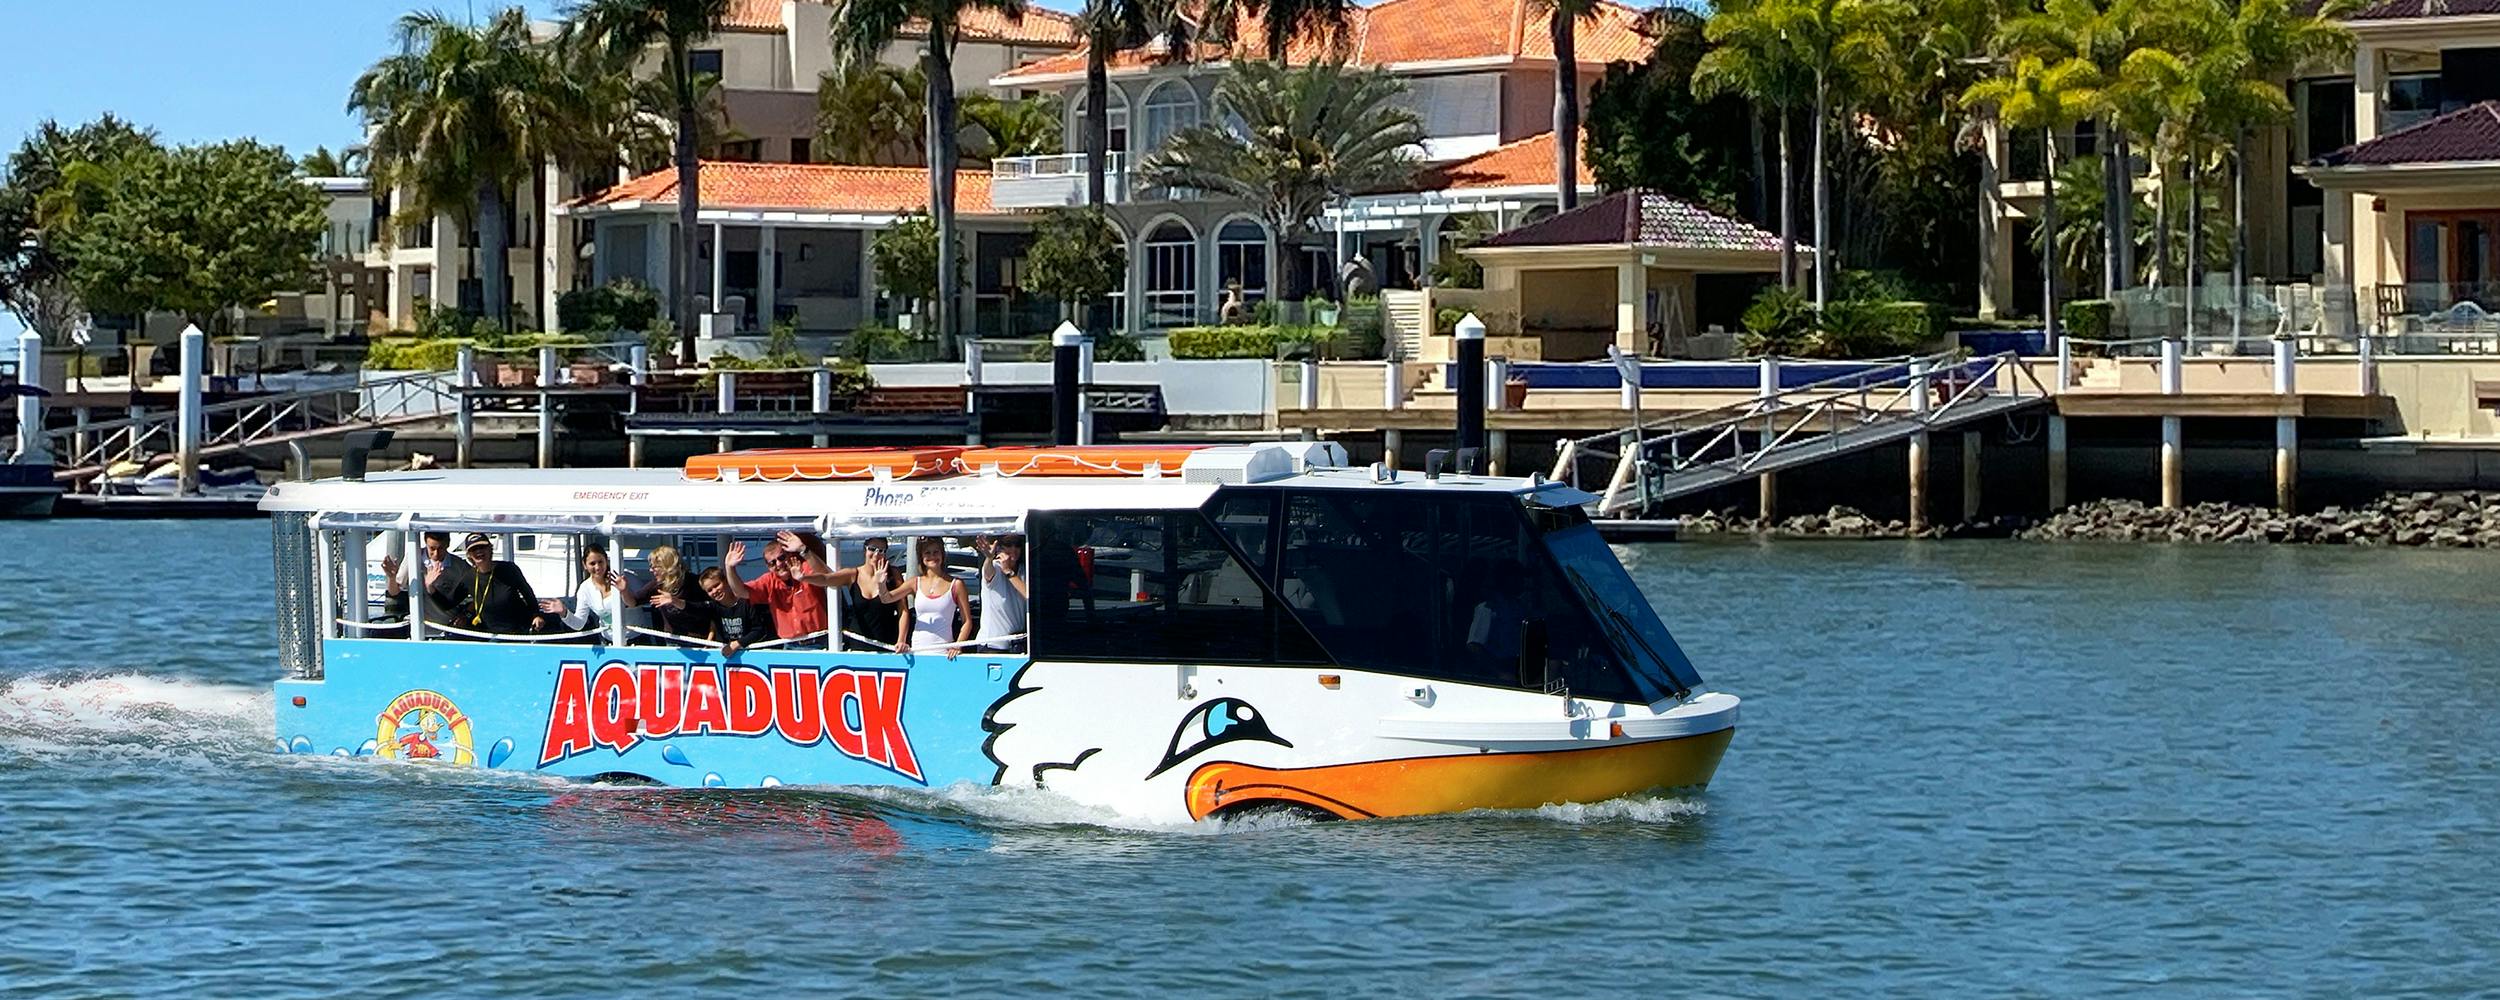 Aquaduck Sunshine Coast City Tour de 1 hora e cruzeiro no rio